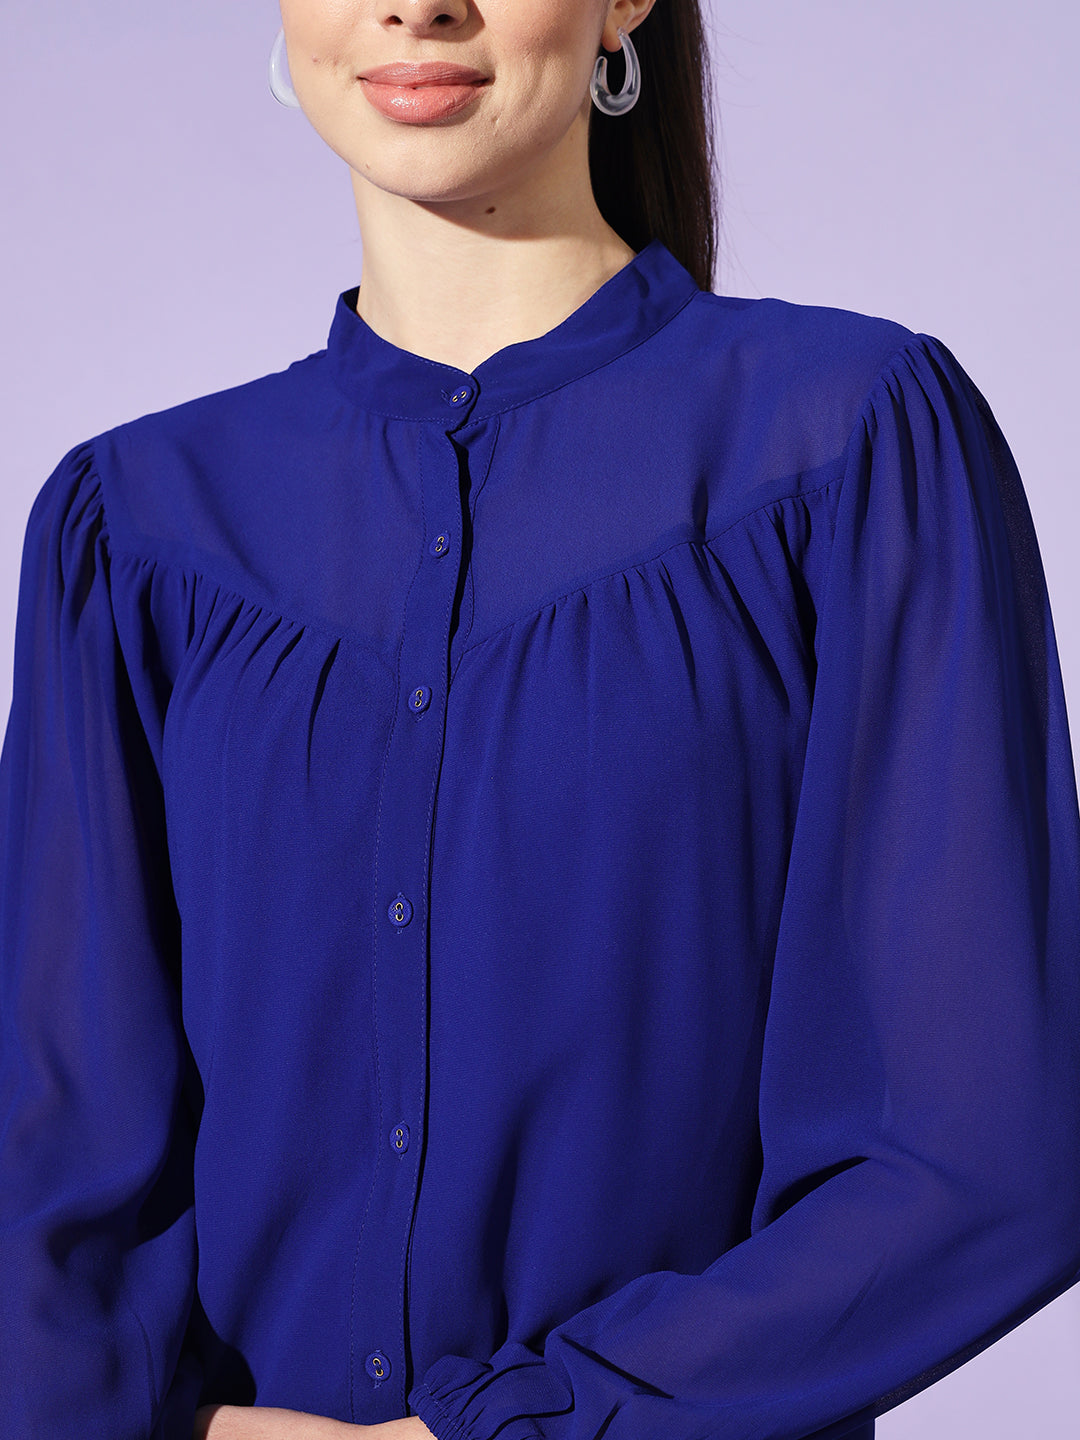 Women Blue Solid Mandarin Collar Shirt Style Top